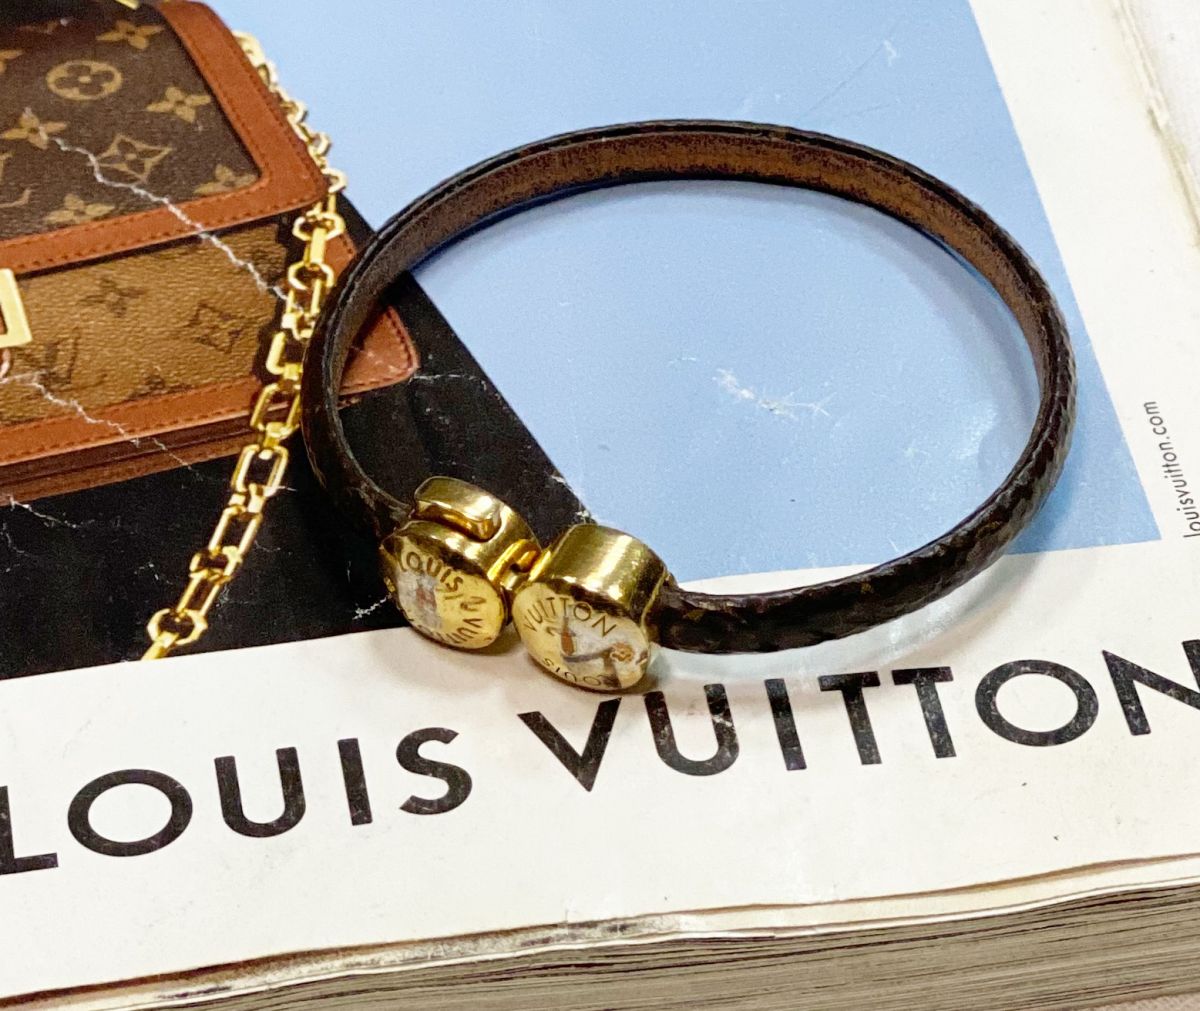 Браслет Louis Vuitton купить со скидкой до 50